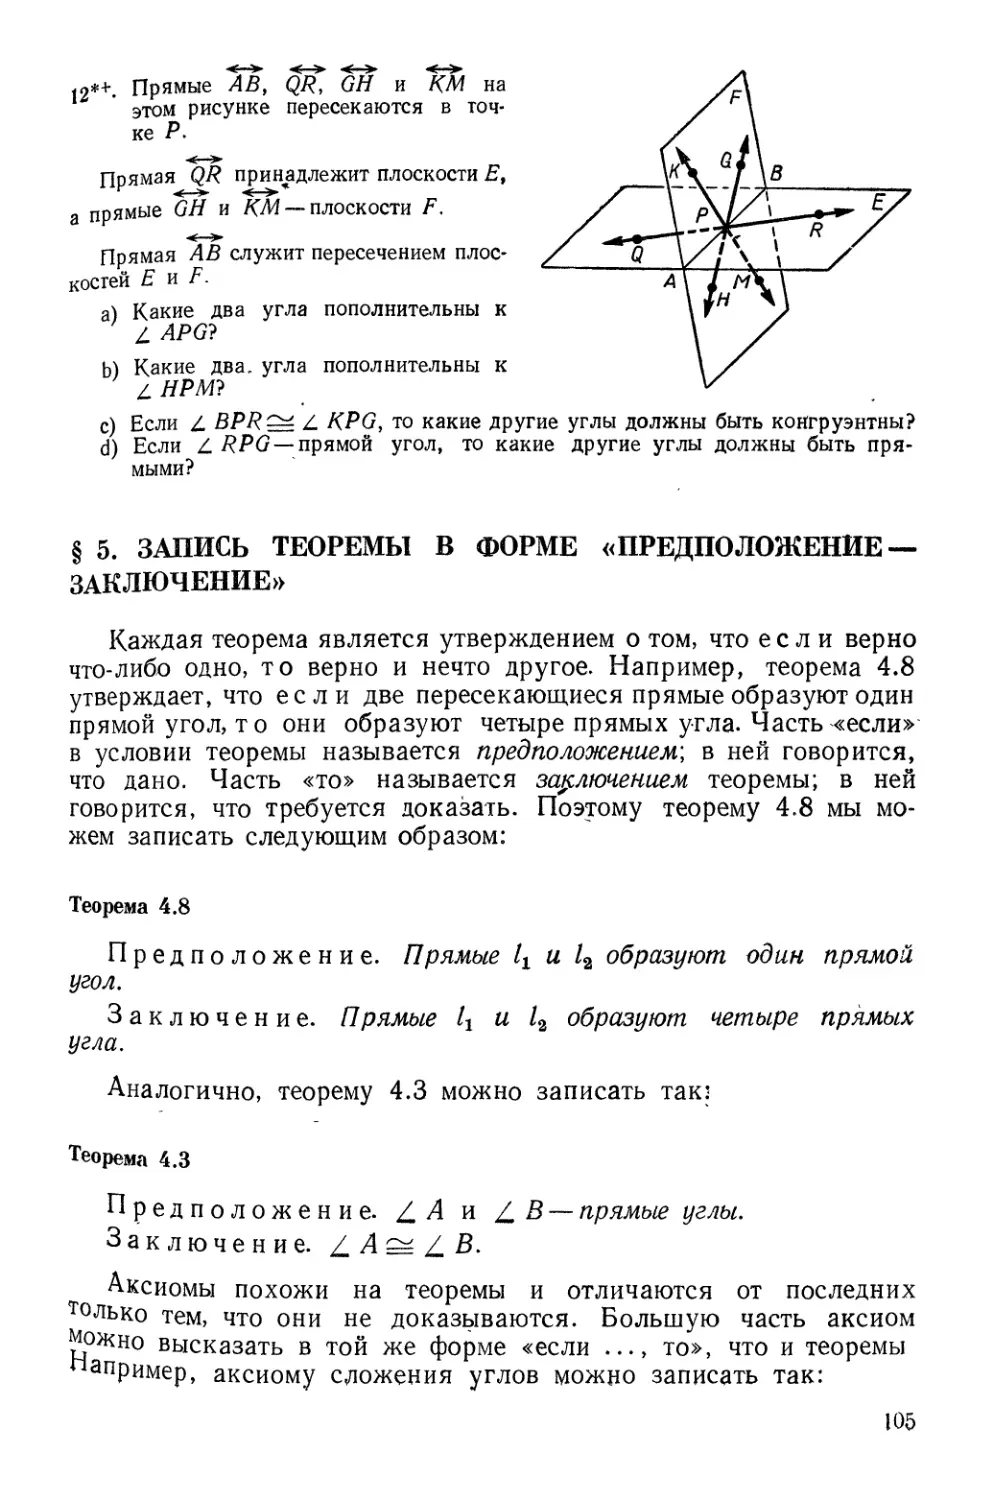 § 5. Запись теоремы в форме «предположение - заключение»